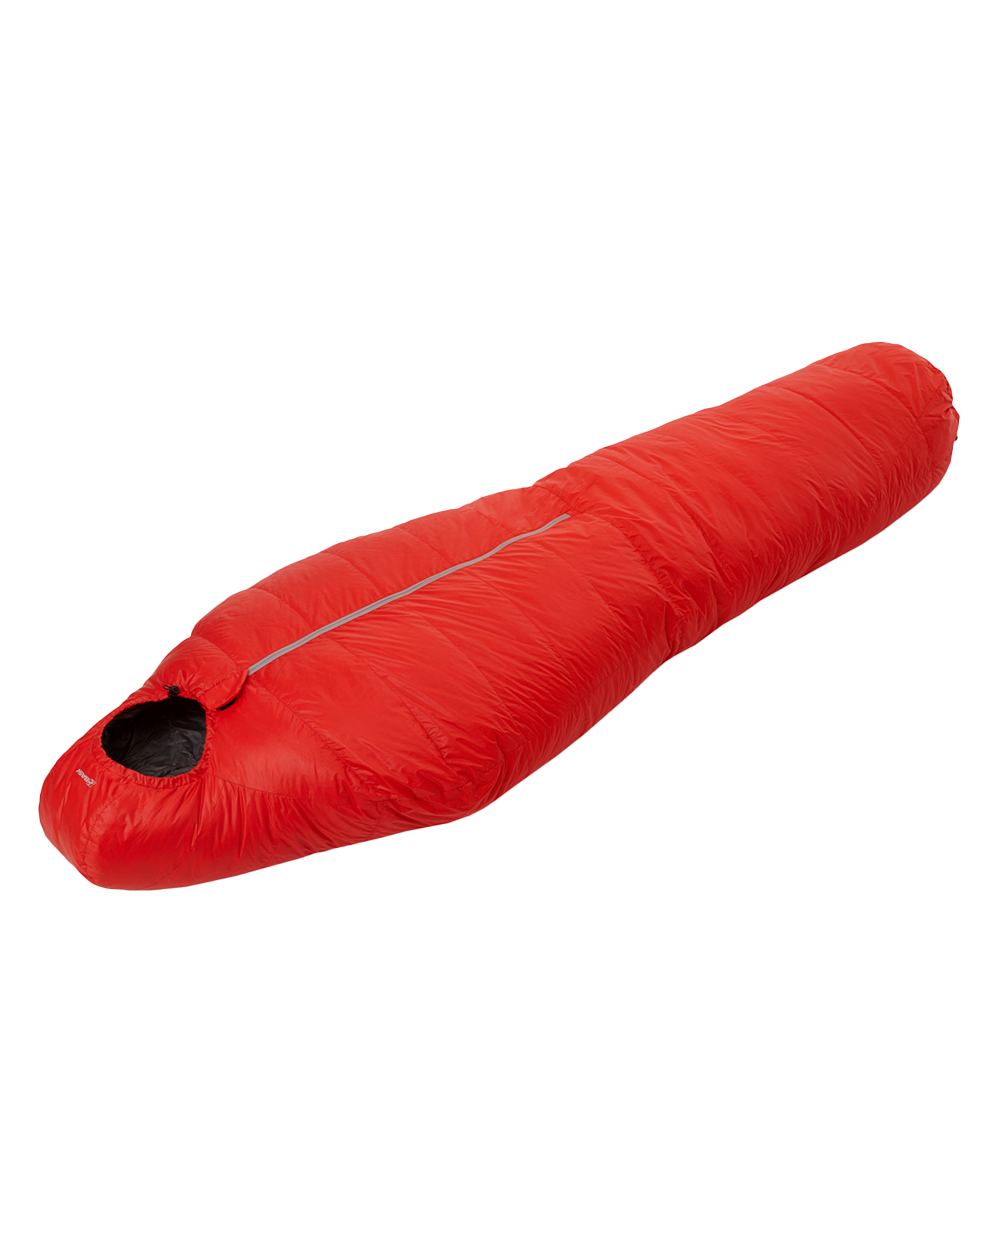 Спальный мешок BASK, цвет красный 20042-9205 Halo light xl - фото 1